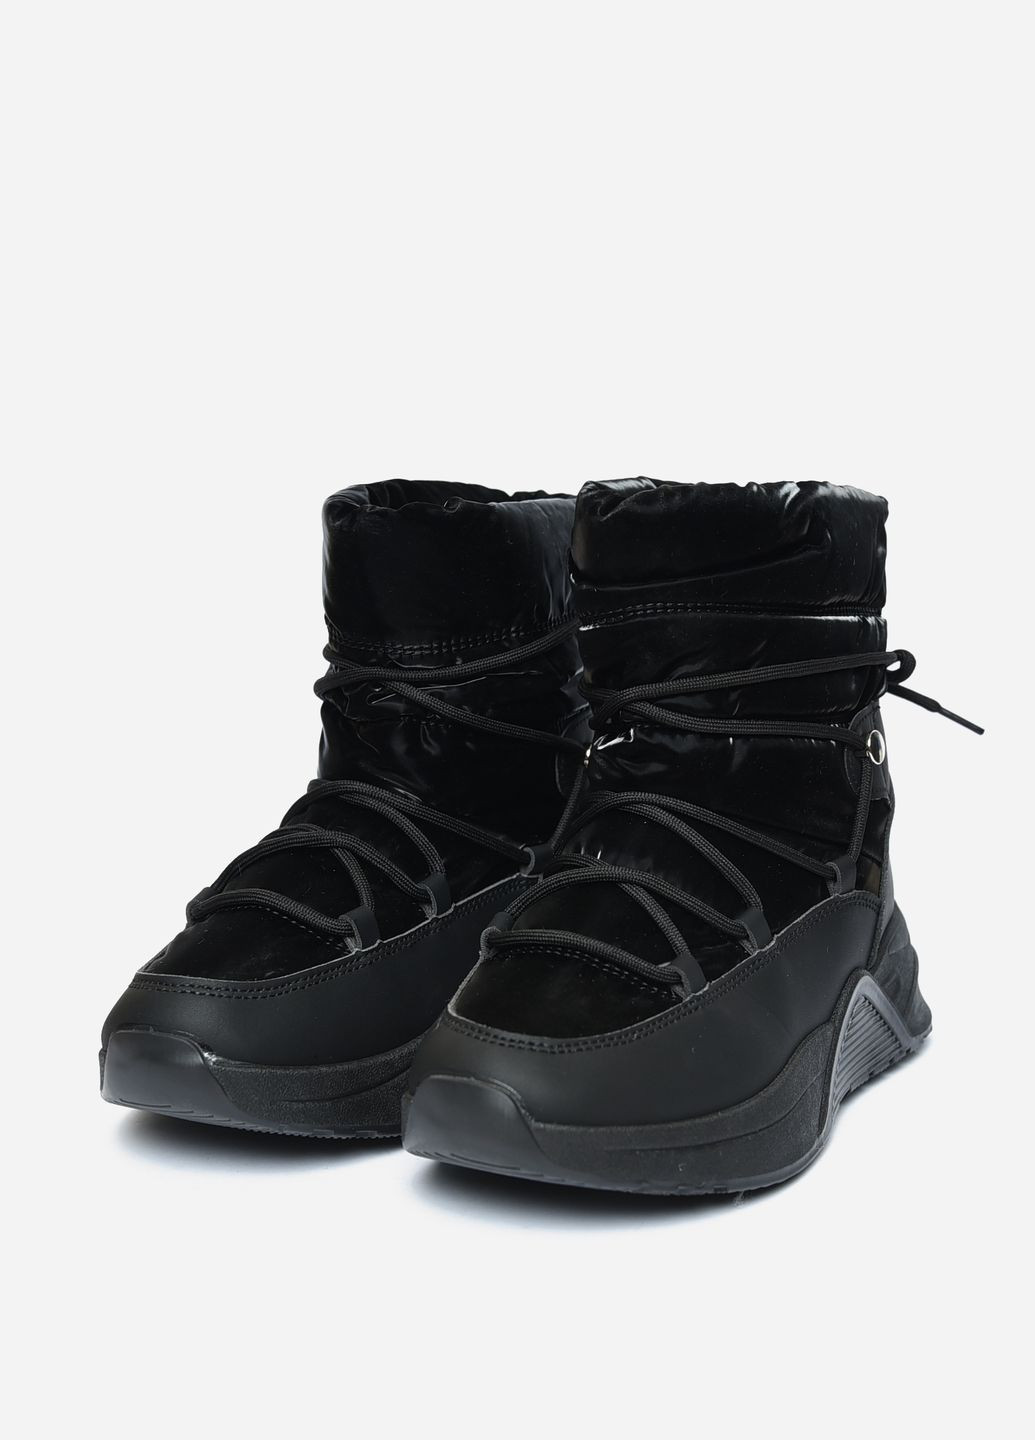 Зимние ботинки женские зима черного цвета дезерты Let's Shop без декора тканевые